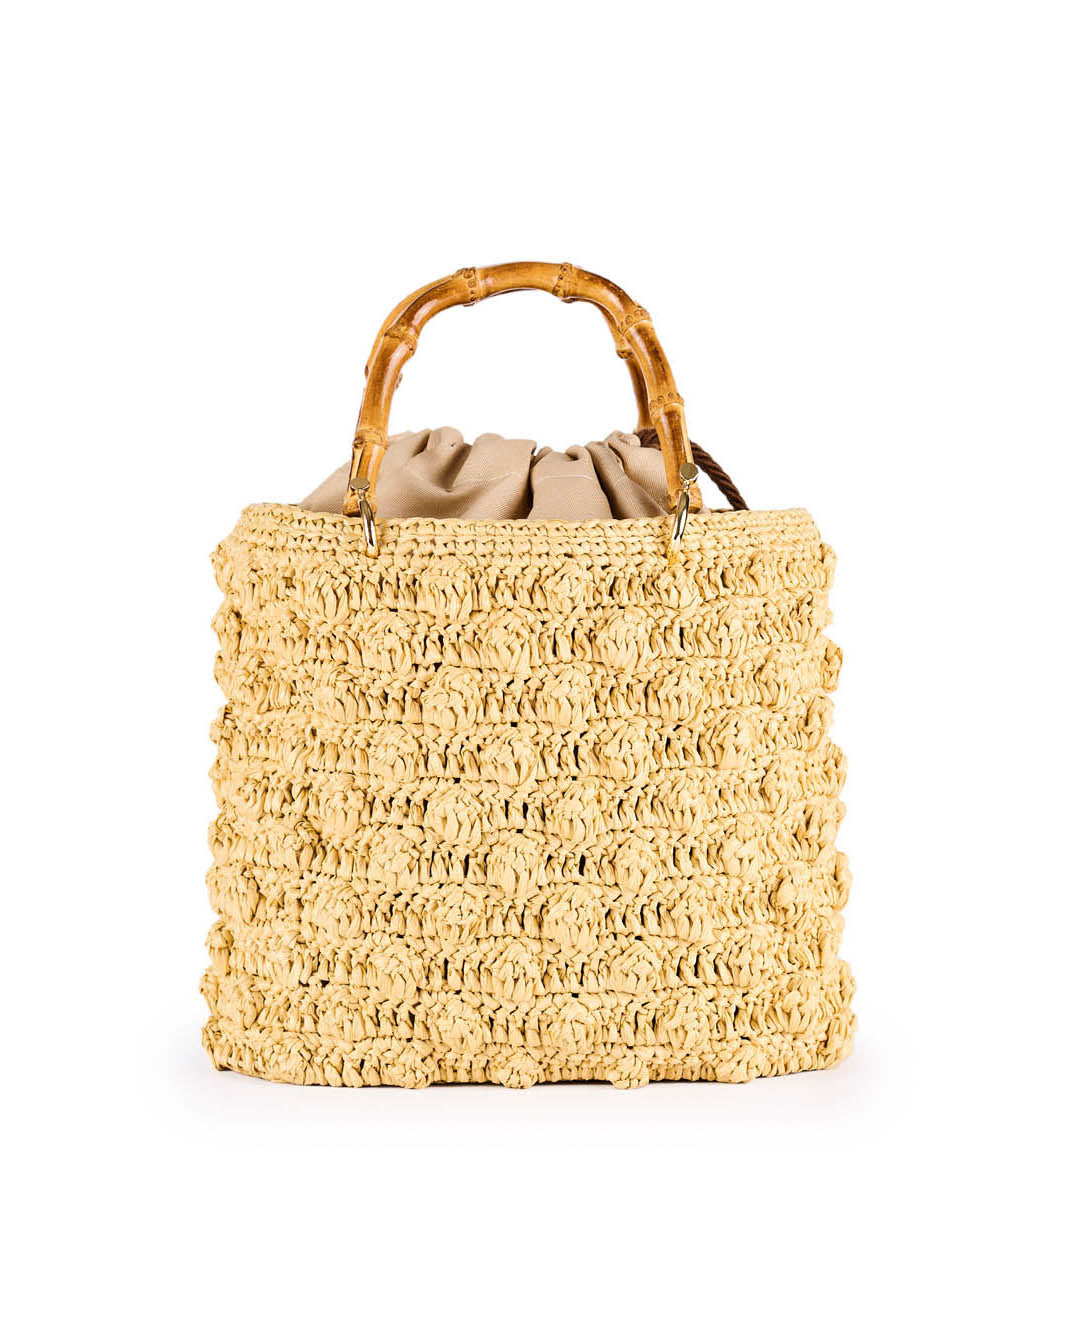 Handmade woven straw handbag with bamboo handles and drawstring closure